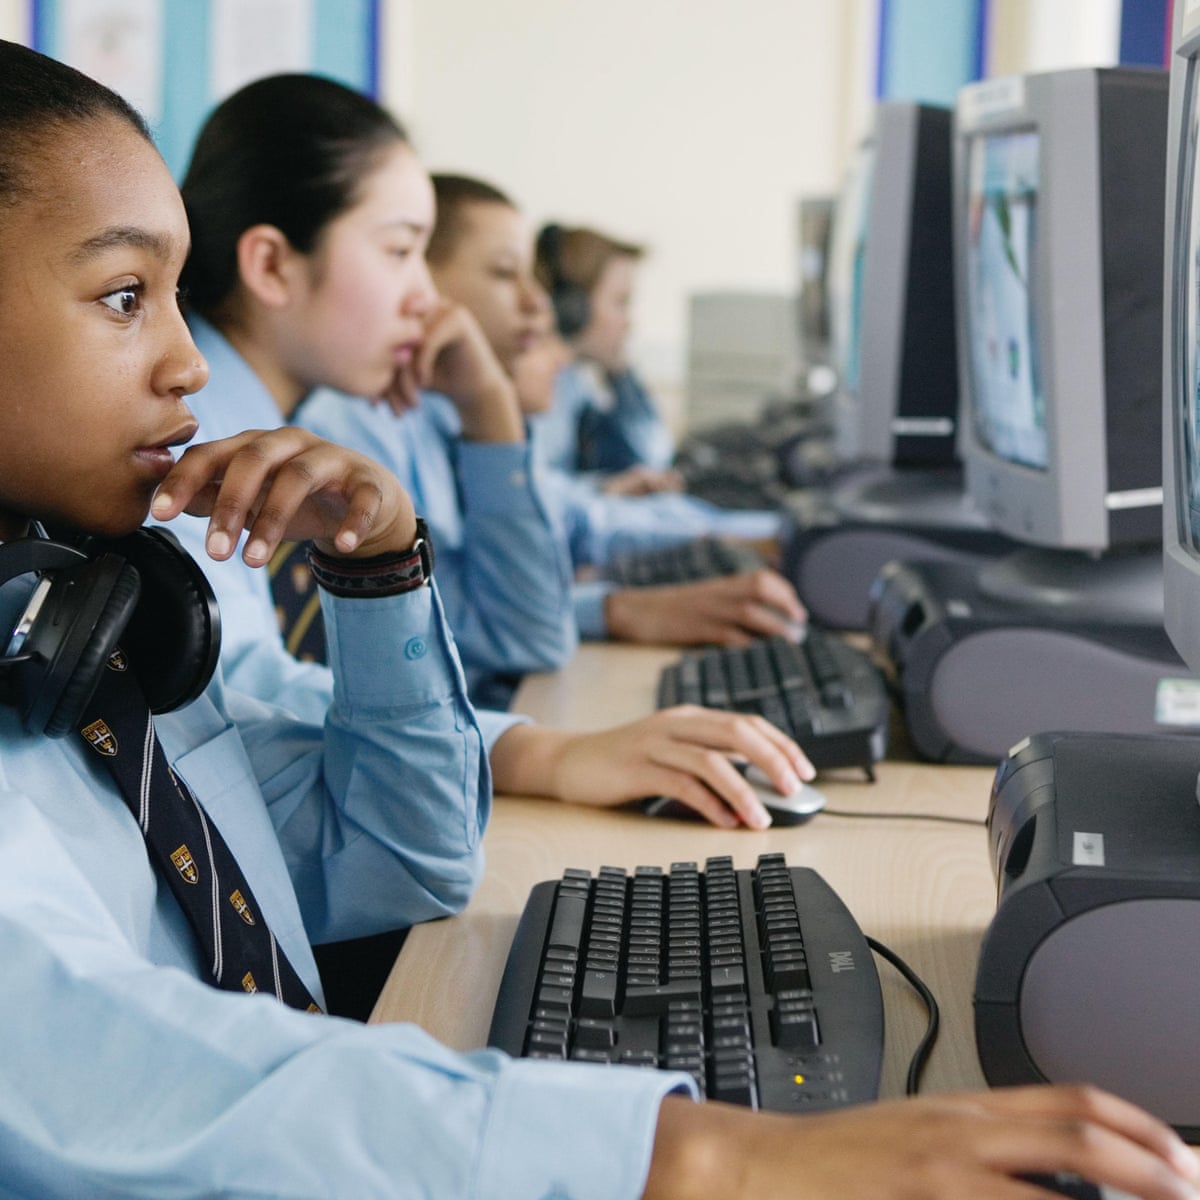 Secondary school pupils. Информационные технологии обучения. Компьютер на уроке. Компьютеры в образовании. ICT Америке.